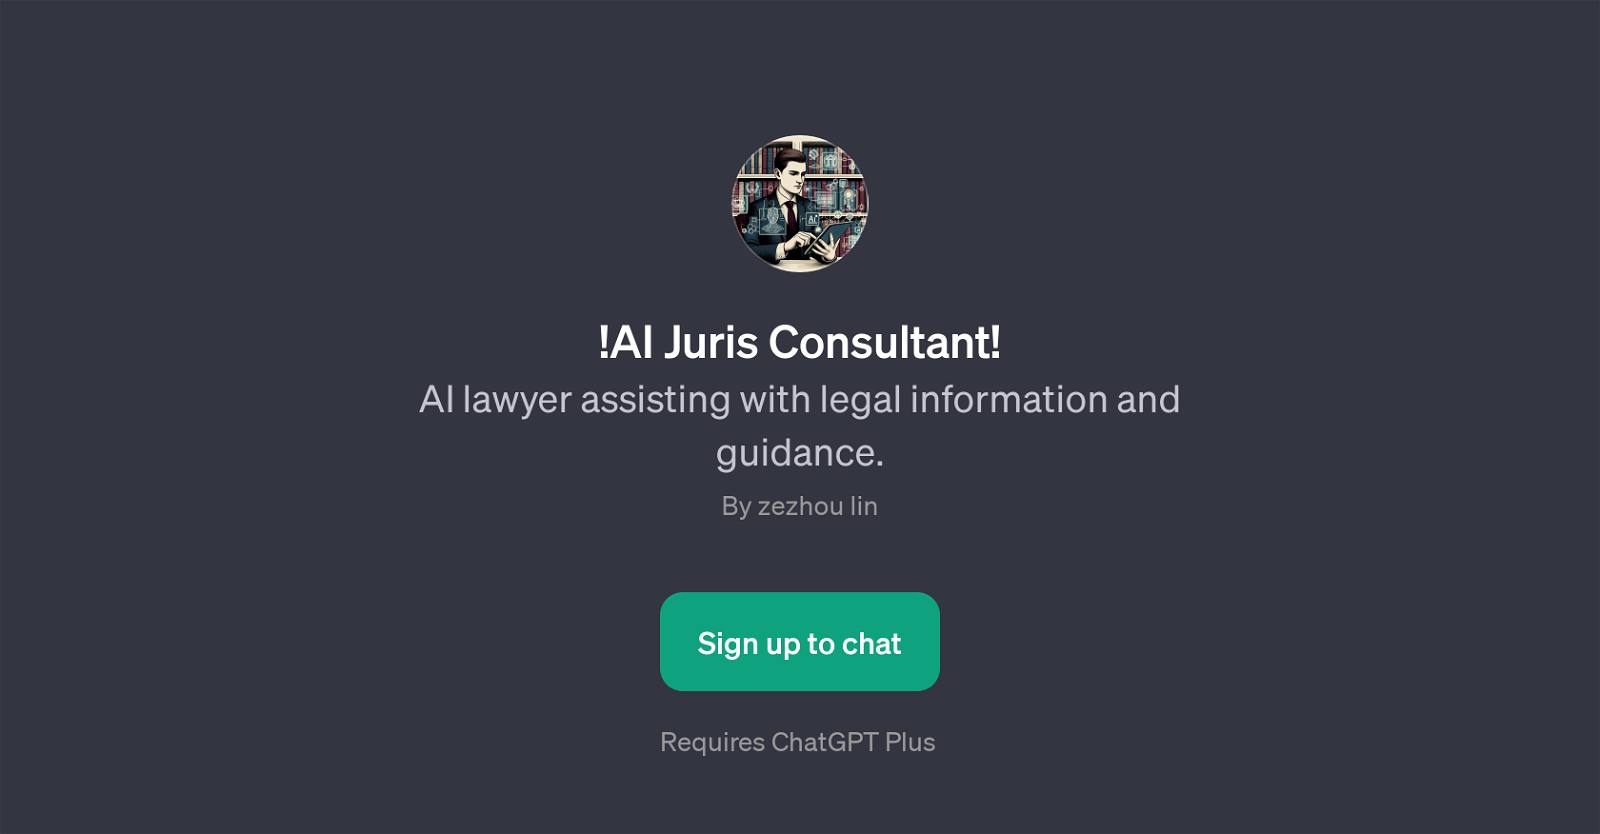 AI Juris Consultant website